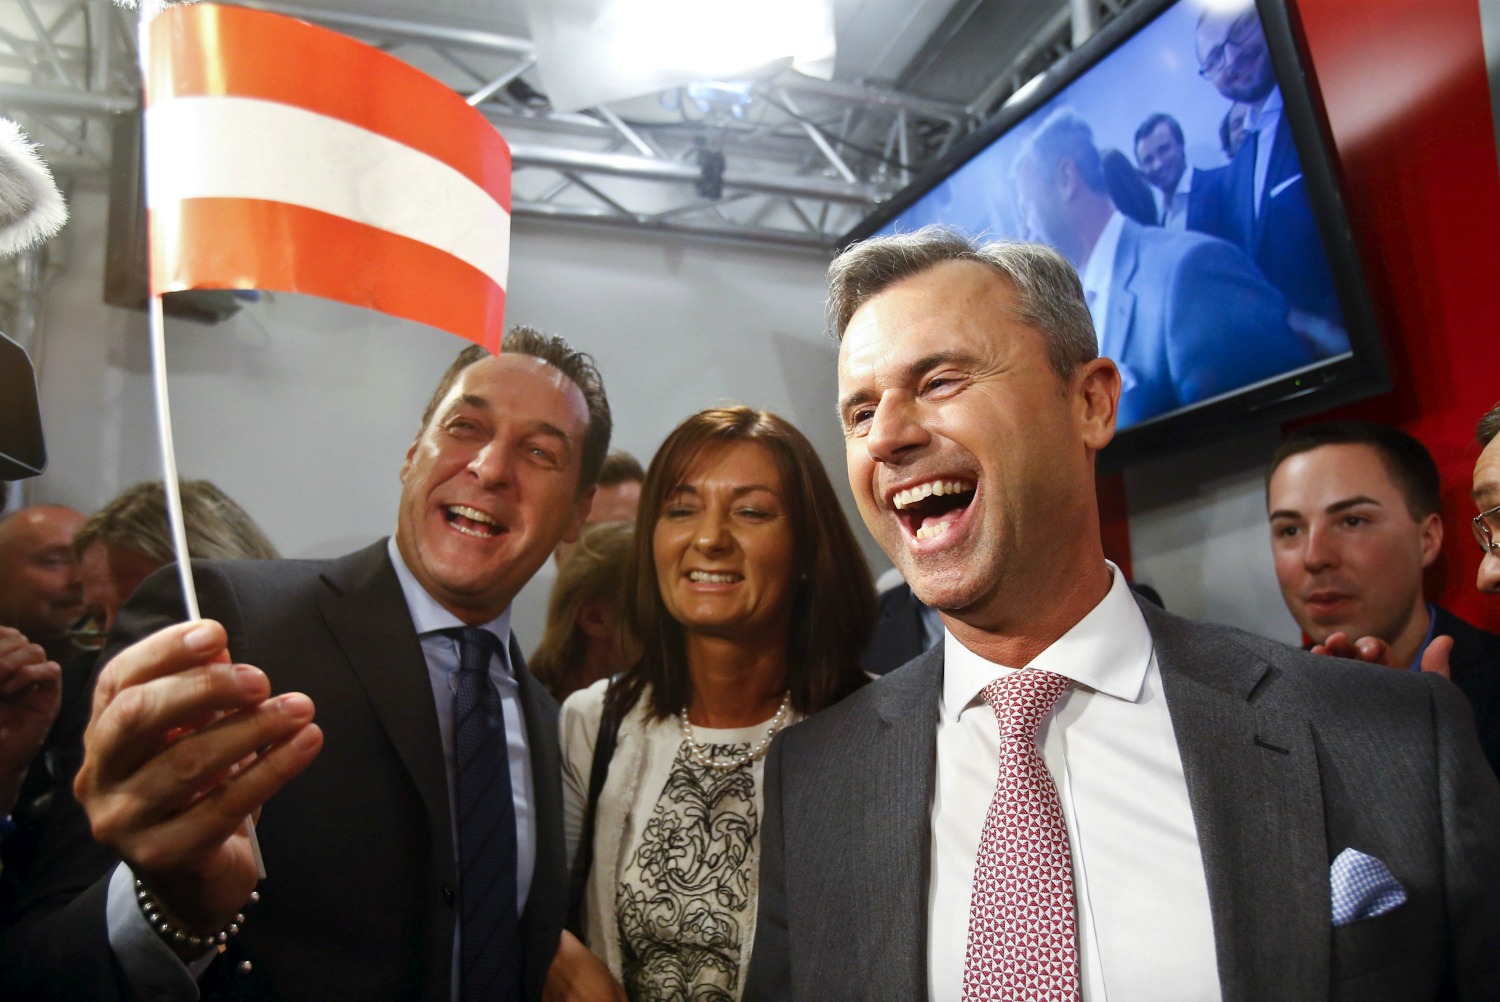 Austria repetirá las elecciones al aceptarse la impugnación de la extrema derecha